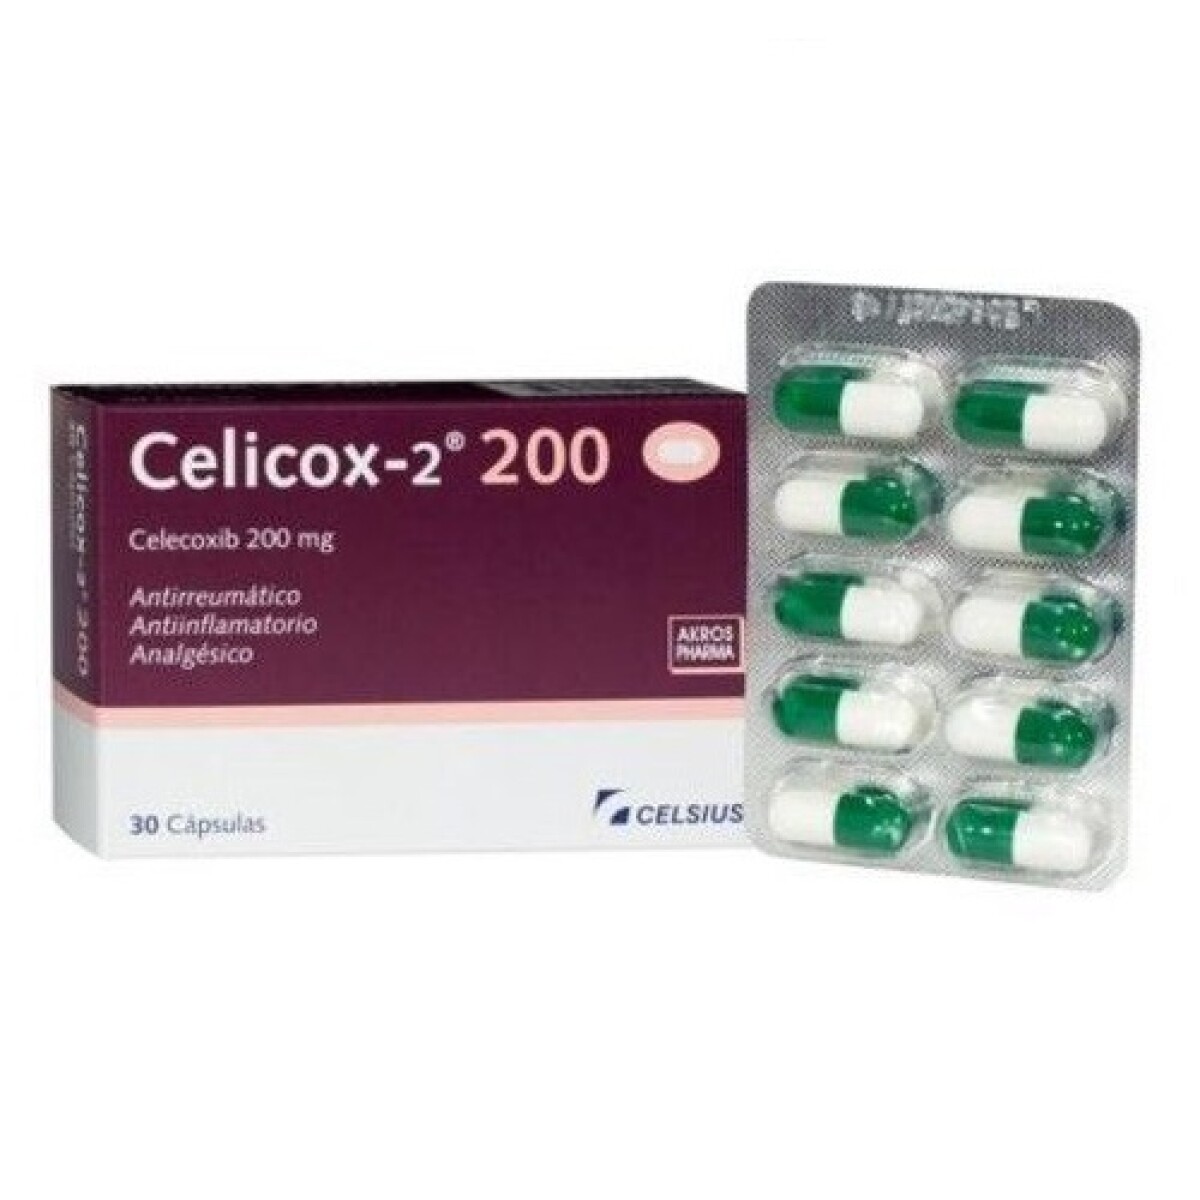 Celicox-2 200 Mg. 30 Caps. 